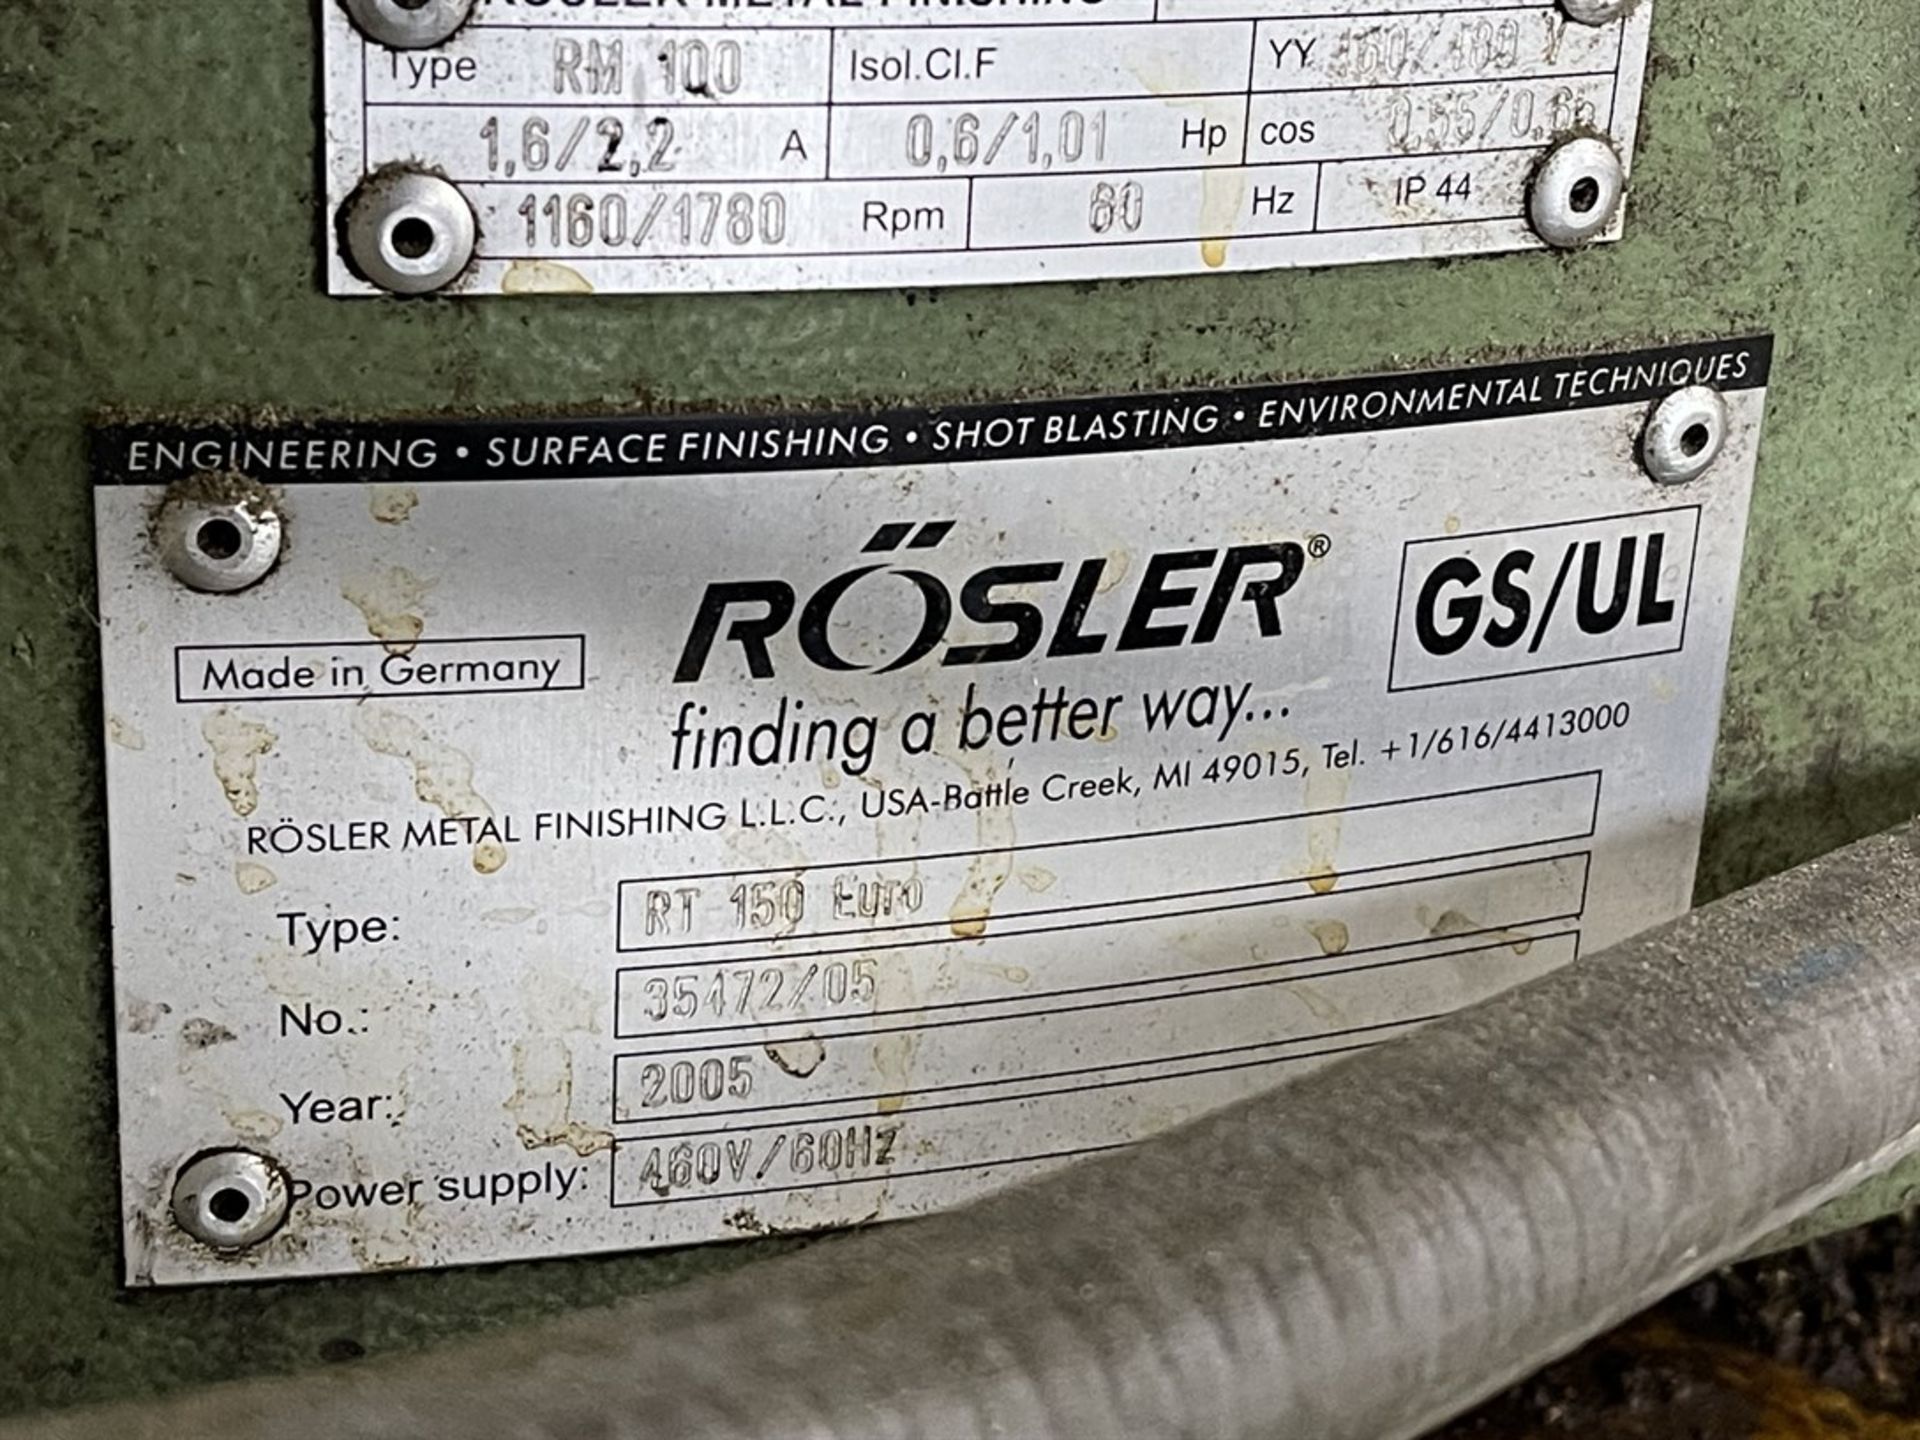 2005 ROSLER RT150 Euro Vibratory Finisher, s/n 35472/05, ANGOR AMH600 Dumper Loader, s/n P0295915BL, - Image 3 of 11